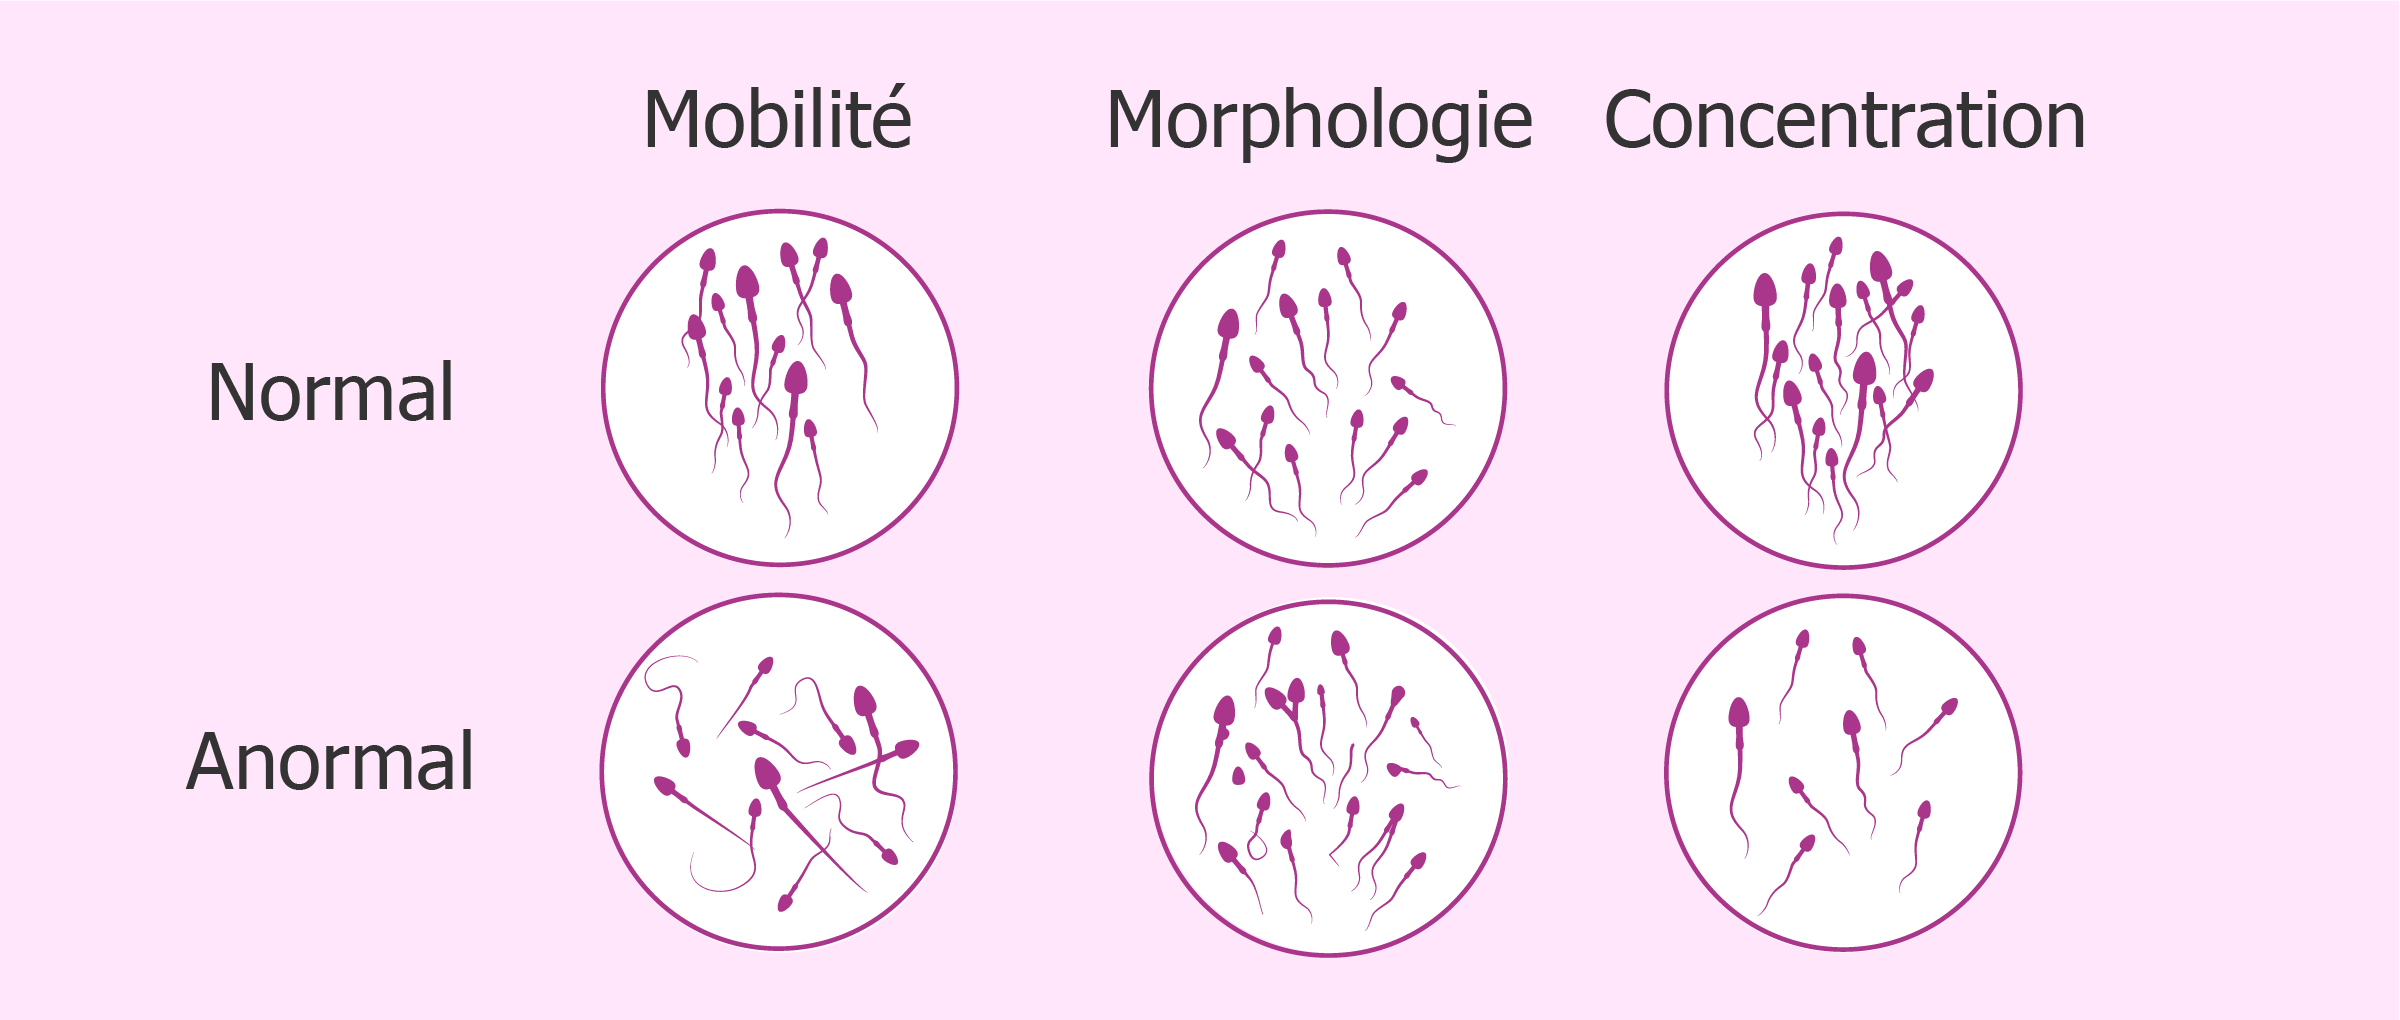 Problèmes de mobilité, morphologie ou concentration des spermatozoïdes